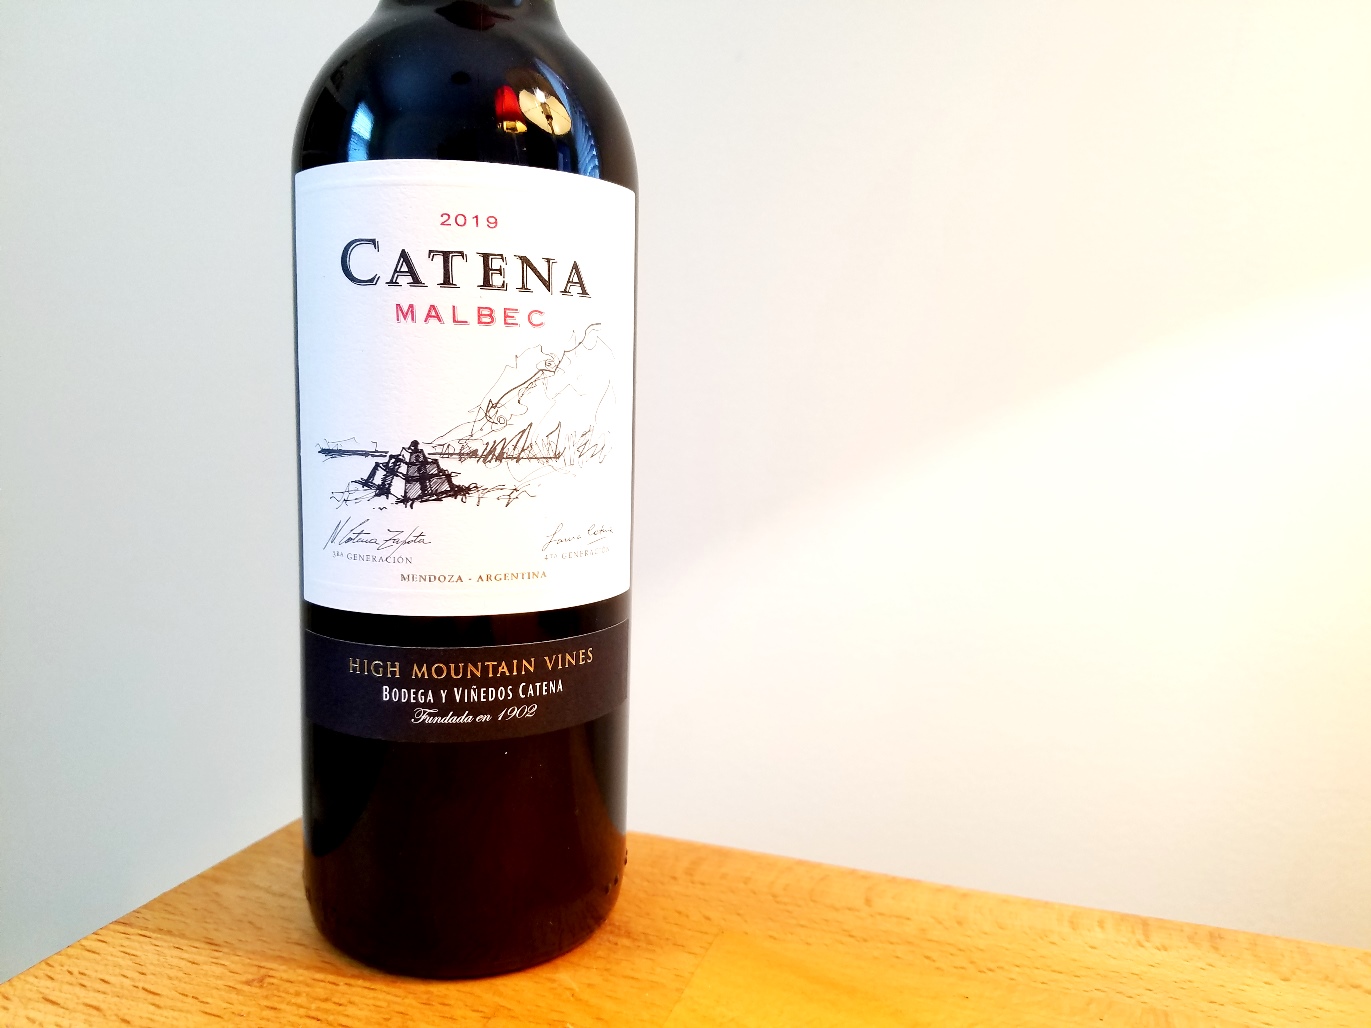 Catena, Malbec 2019, High Mountain Vines, Mendoza, Argentina, Wine Casual